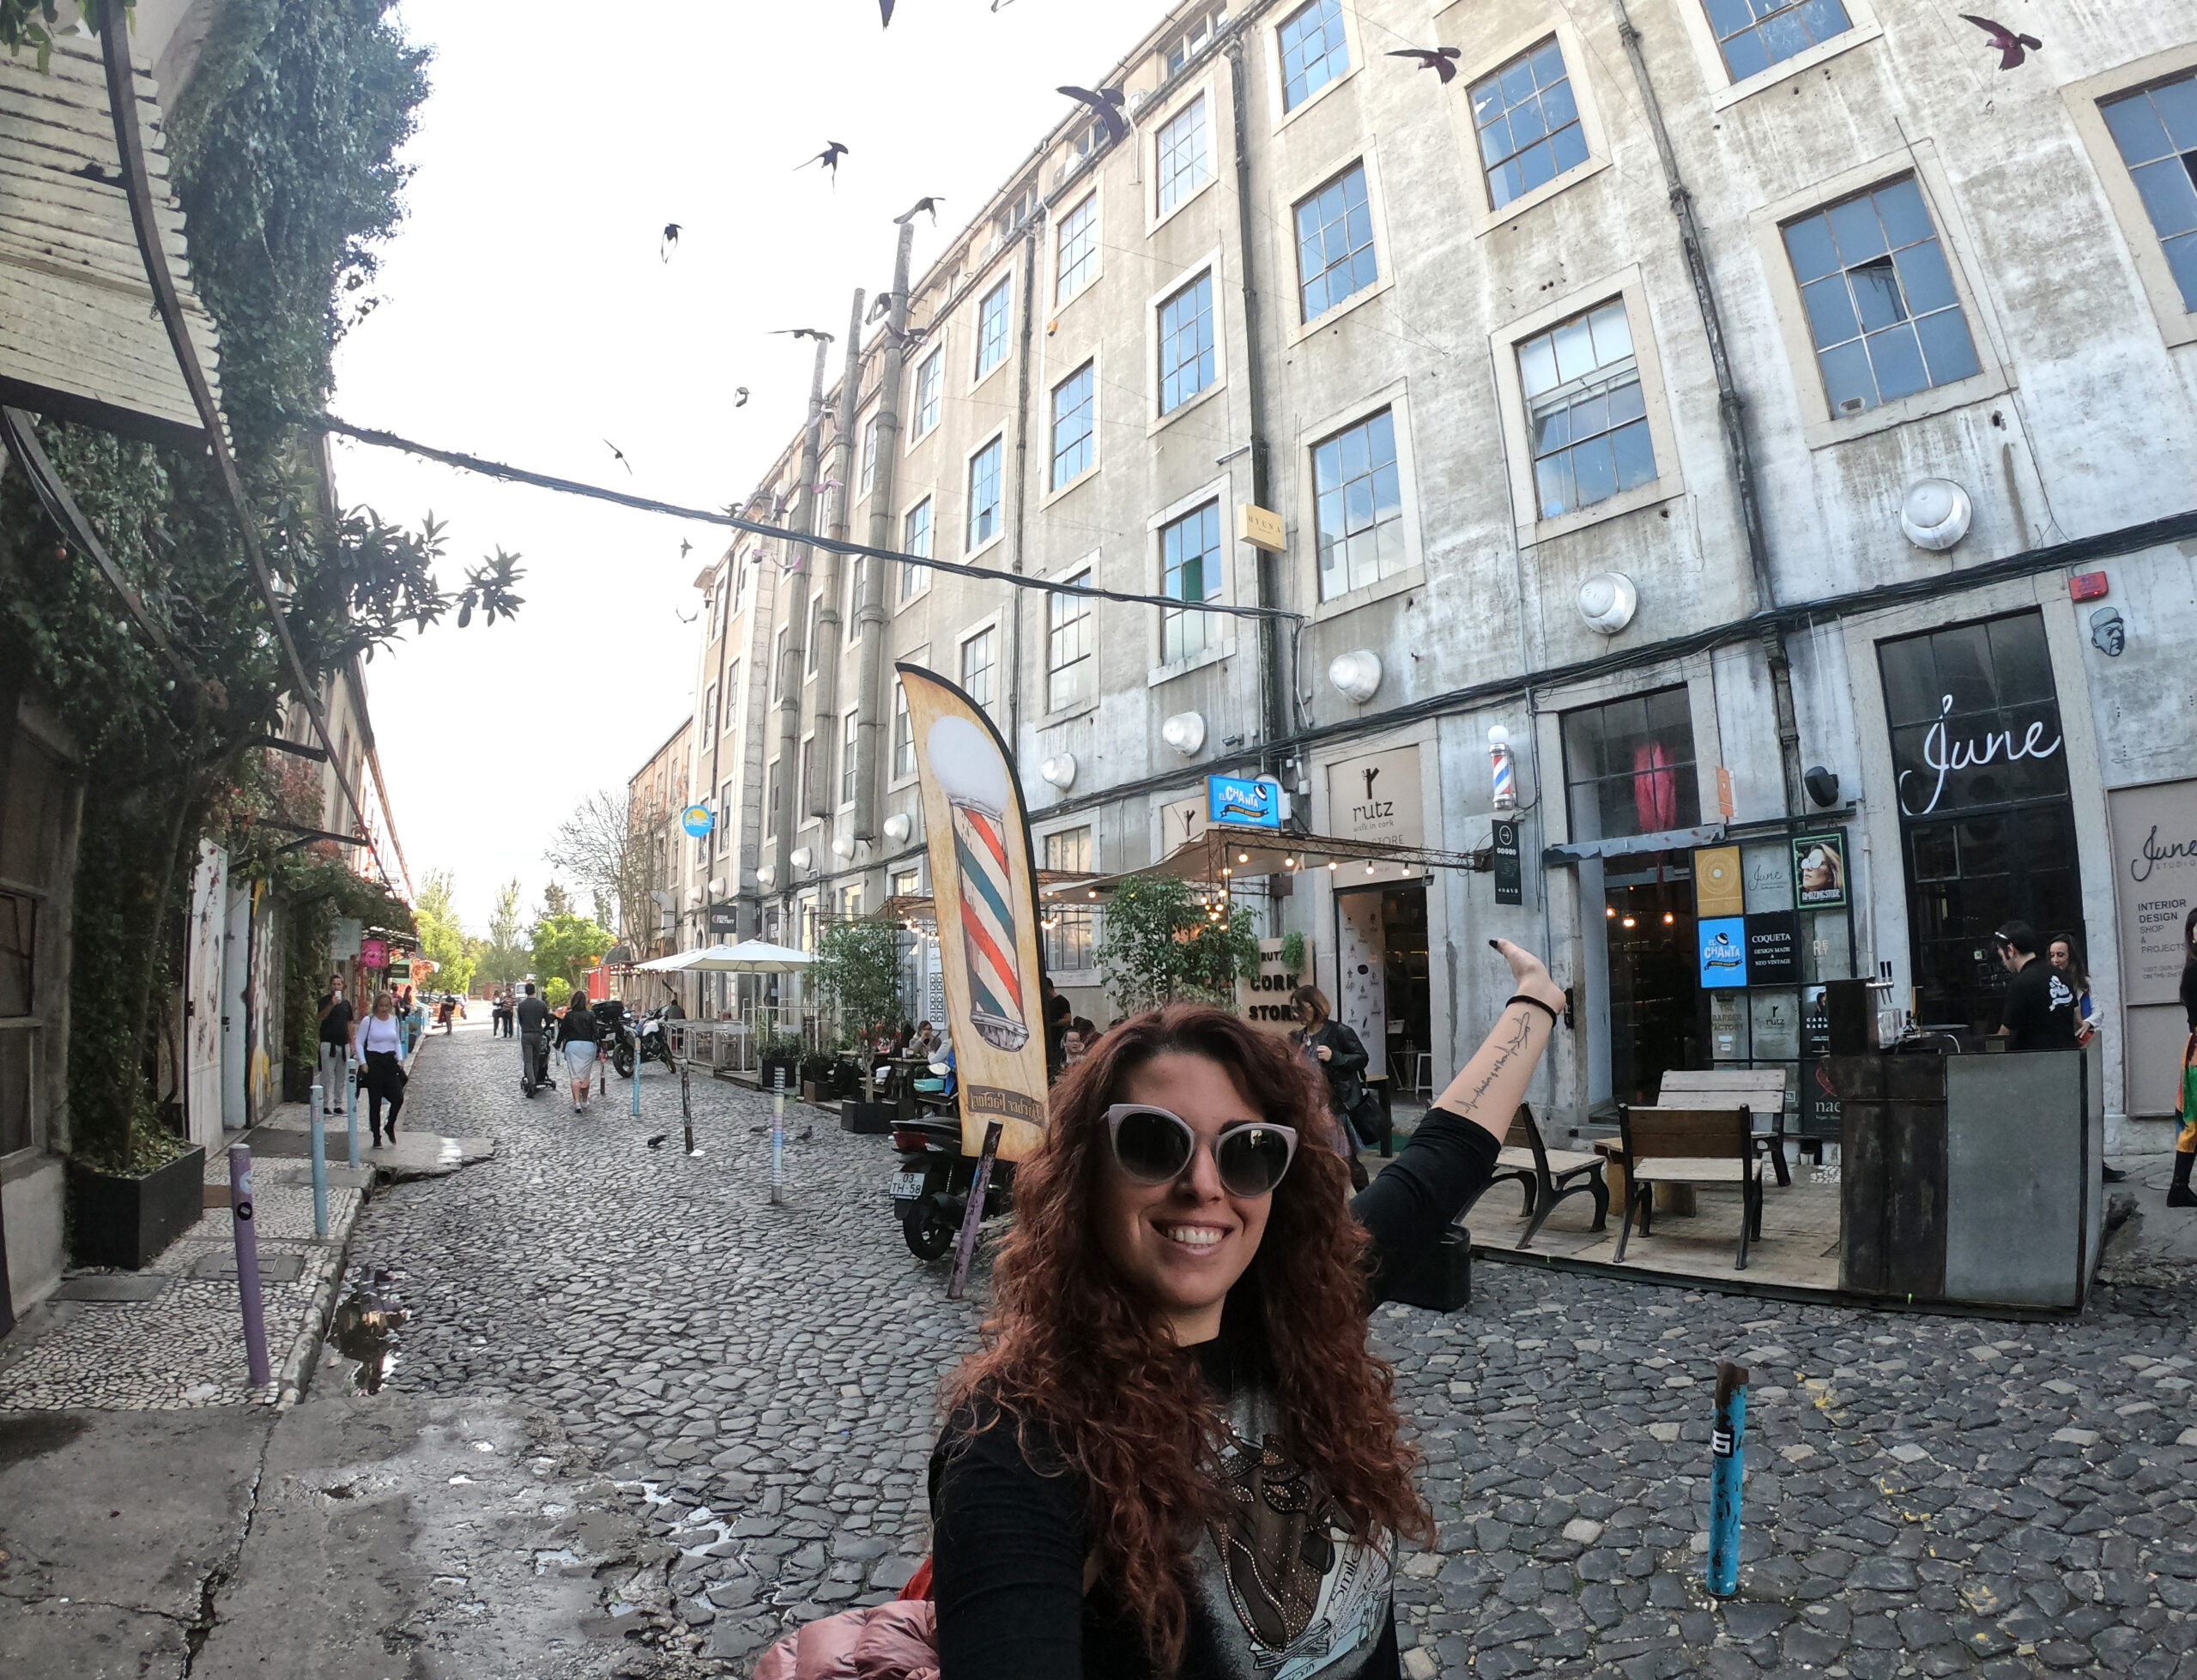 Carlotta sorridente e con un braccio alzato verso l'alto nel quartiere LX factory di Lisbona davanti ad un ex edificio industriale riconvertito in un pub